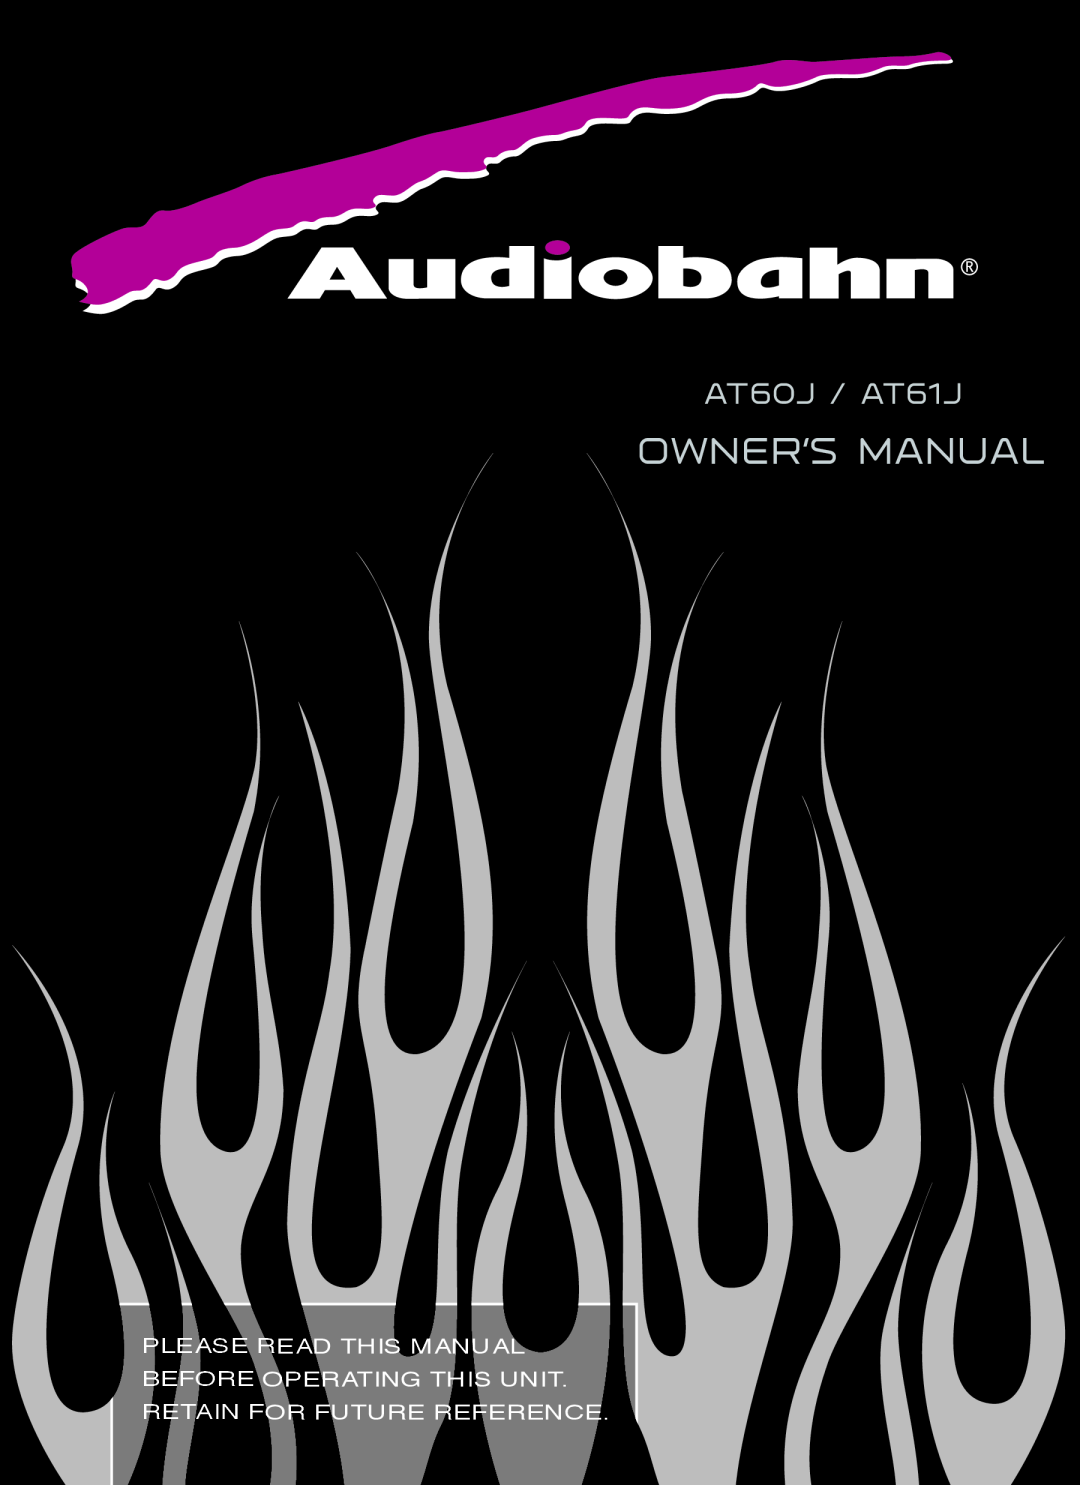 AudioBahn owner manual AT60J / AT61J 